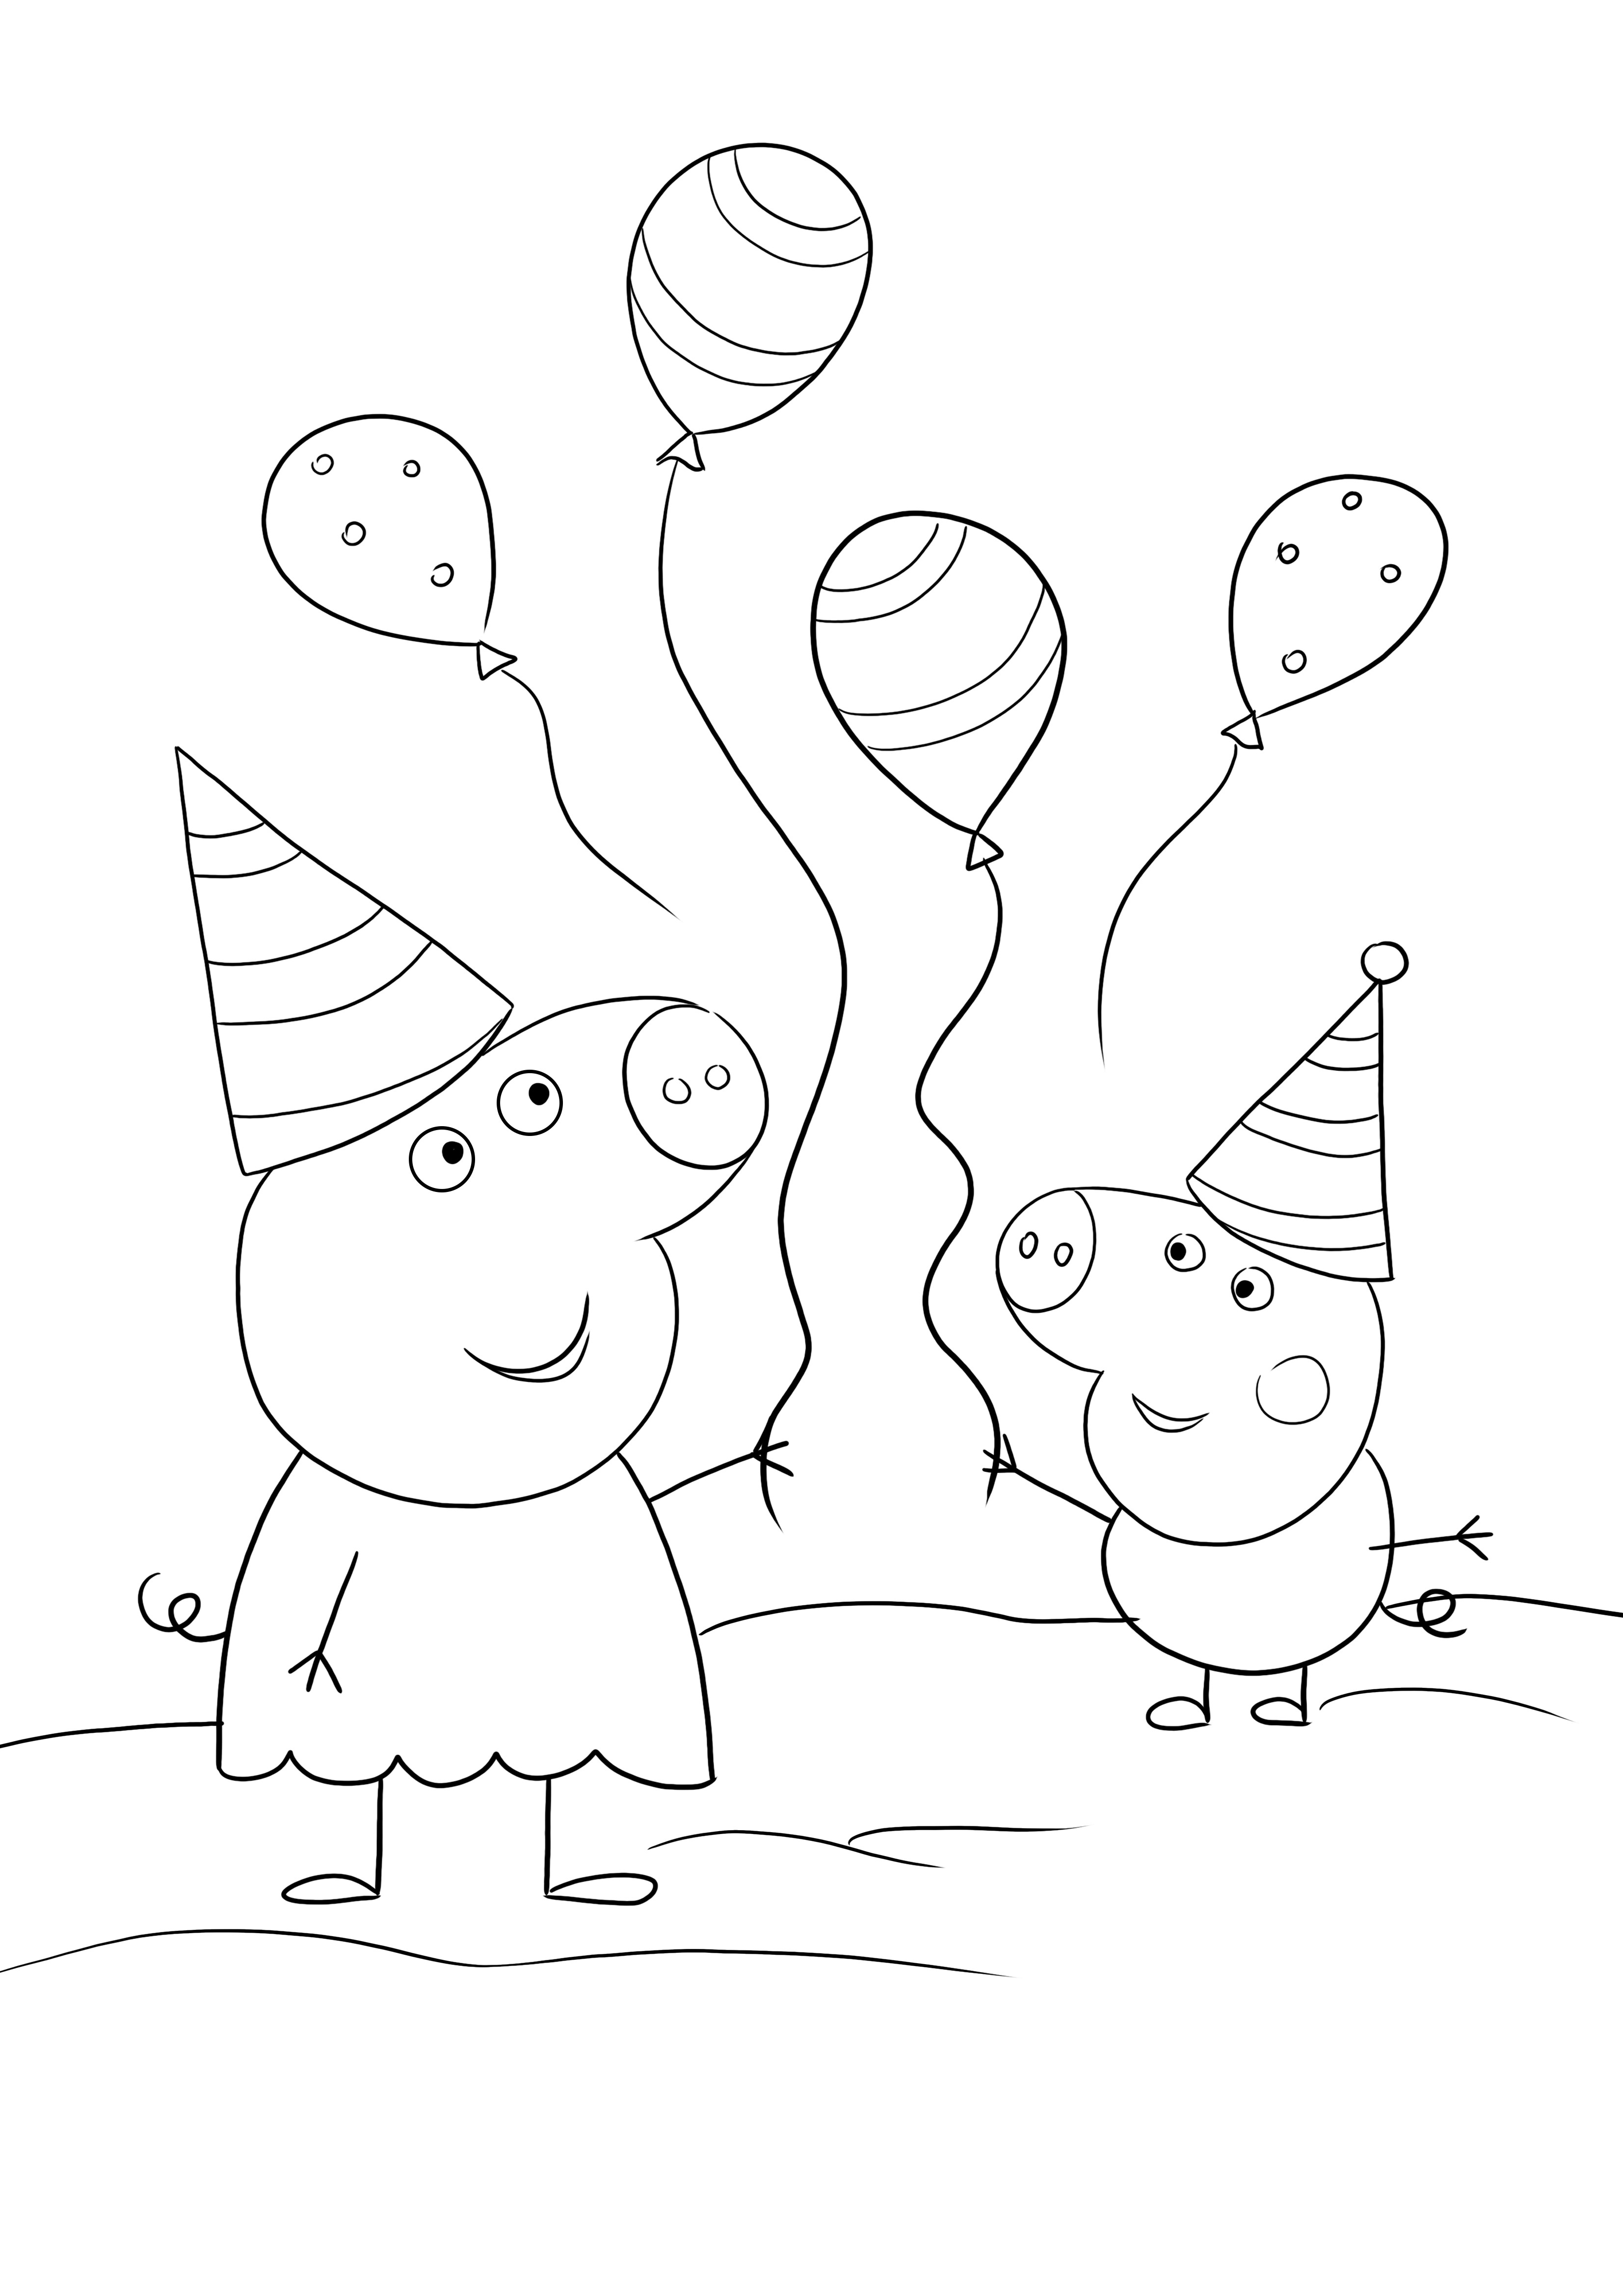 Peppa&George bir Doğum Günü partisine gidiyor - yazdırmak ve renklendirmek için eğlenceli ve ücretsiz bir boyama sayfası